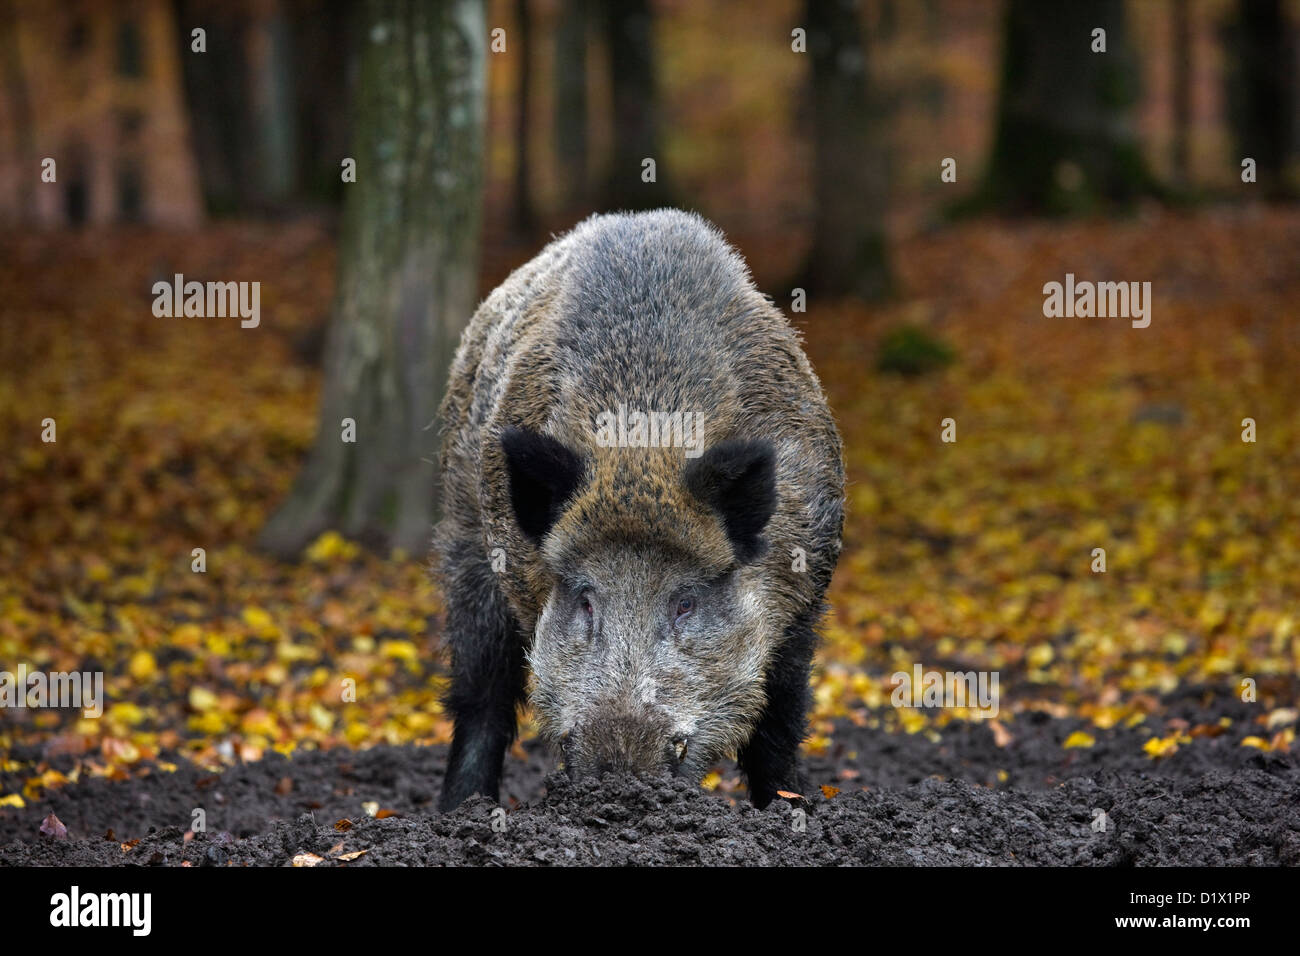 Le sanglier (Sus scrofa) creuser vers le haut de la nourriture dans la boue avec son museau dans la forêt d'automne dans les Ardennes Belges, Belgique Banque D'Images